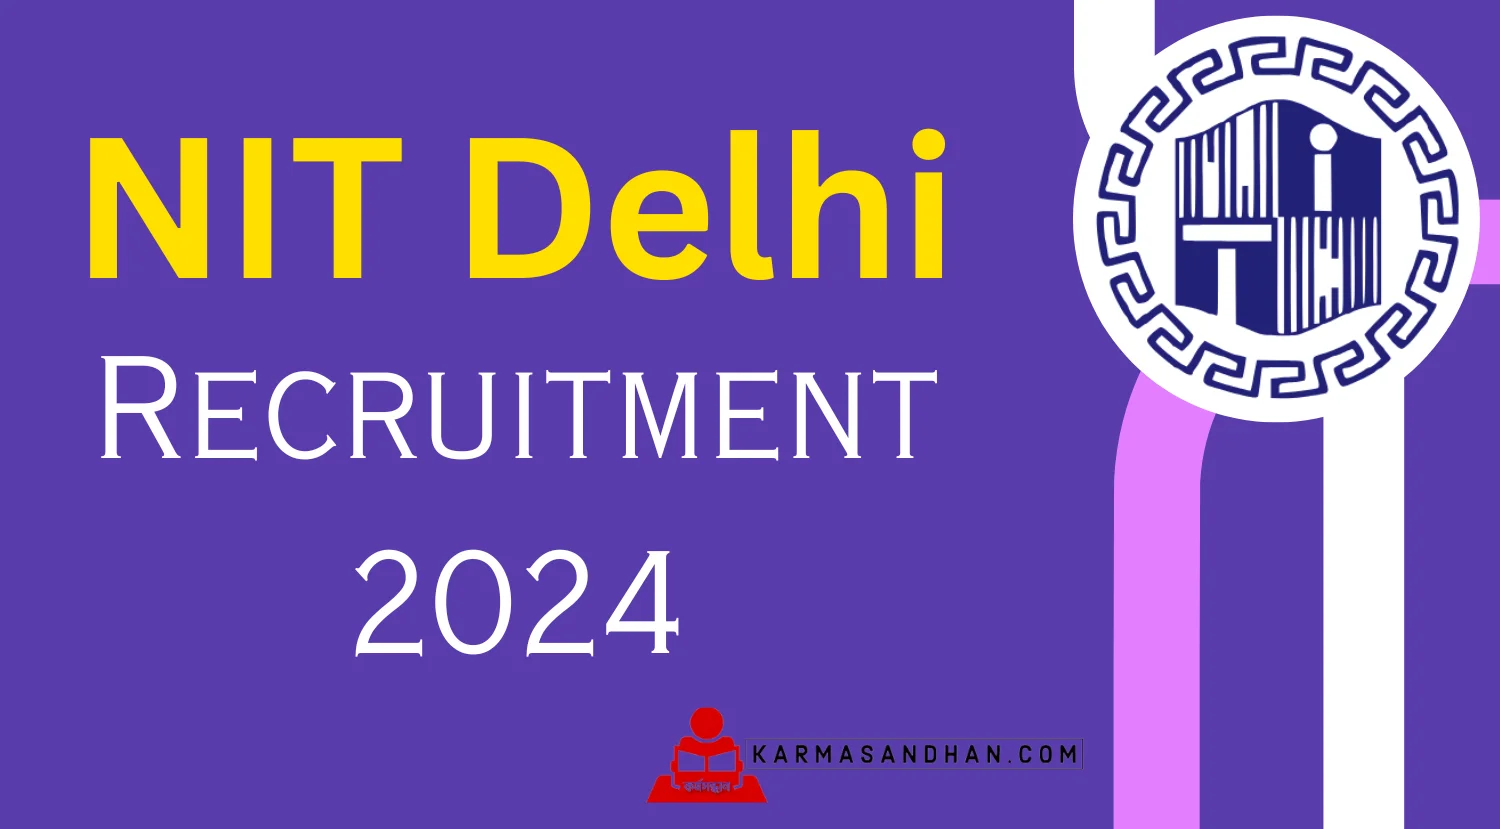 NIT Delhi Faculty Recruitment 2024